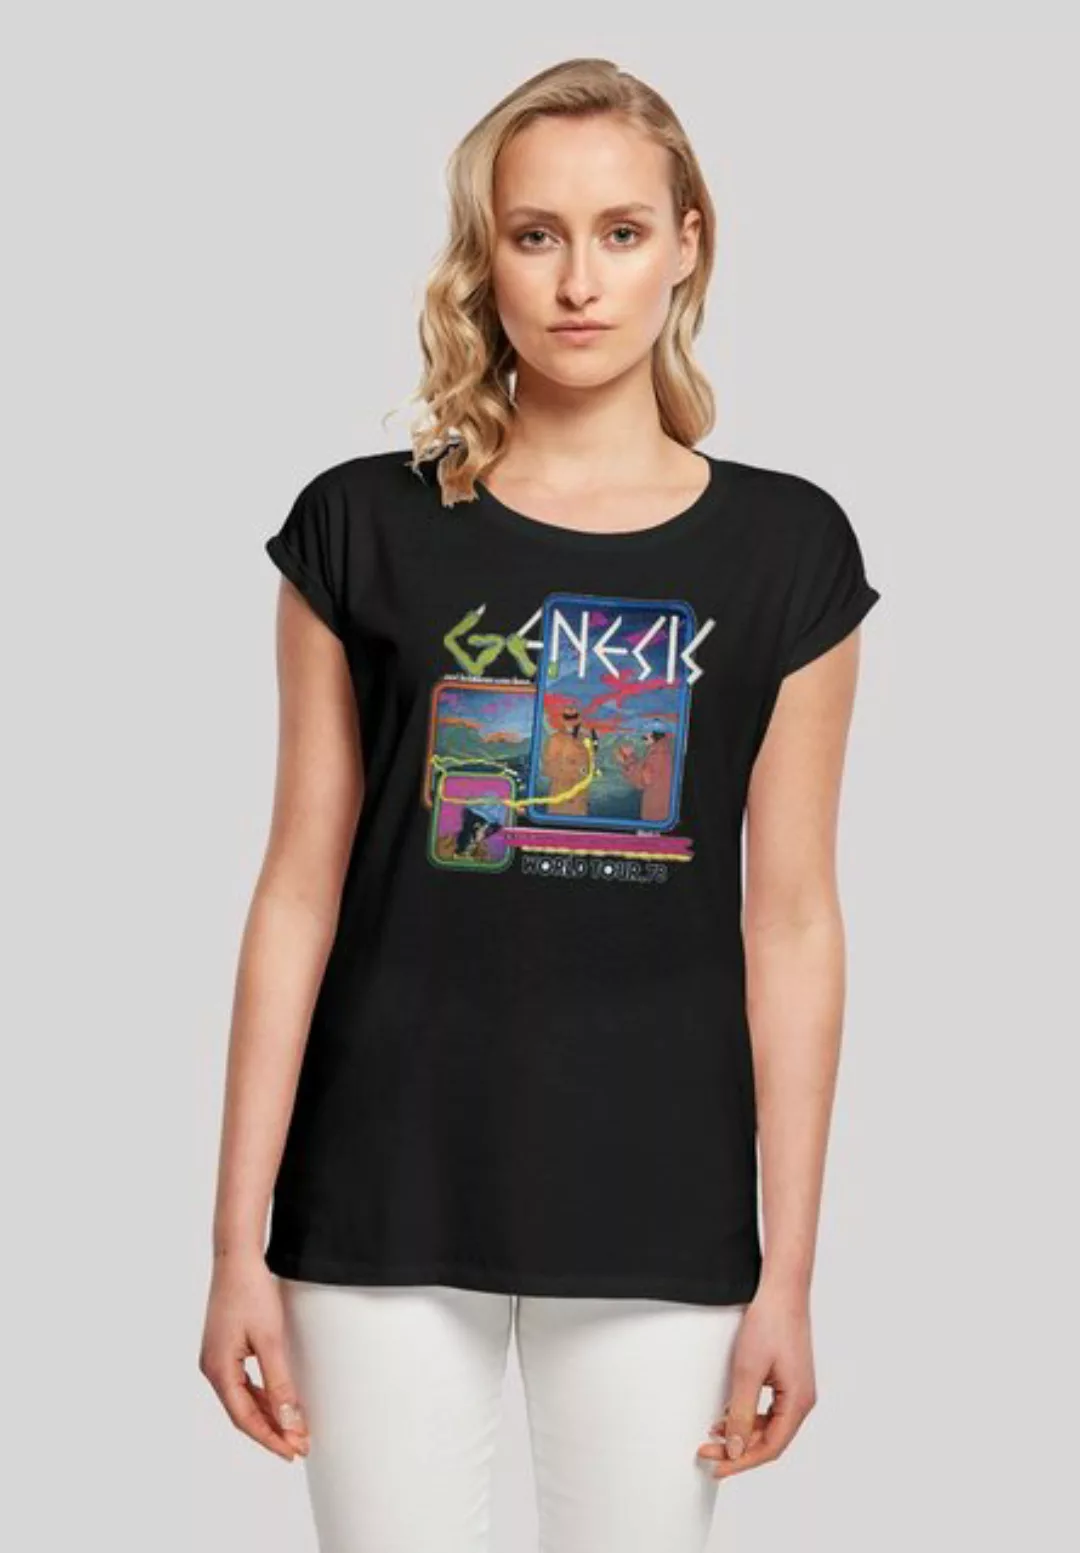 F4NT4STIC T-Shirt "Genesis World Tour 78", Print günstig online kaufen